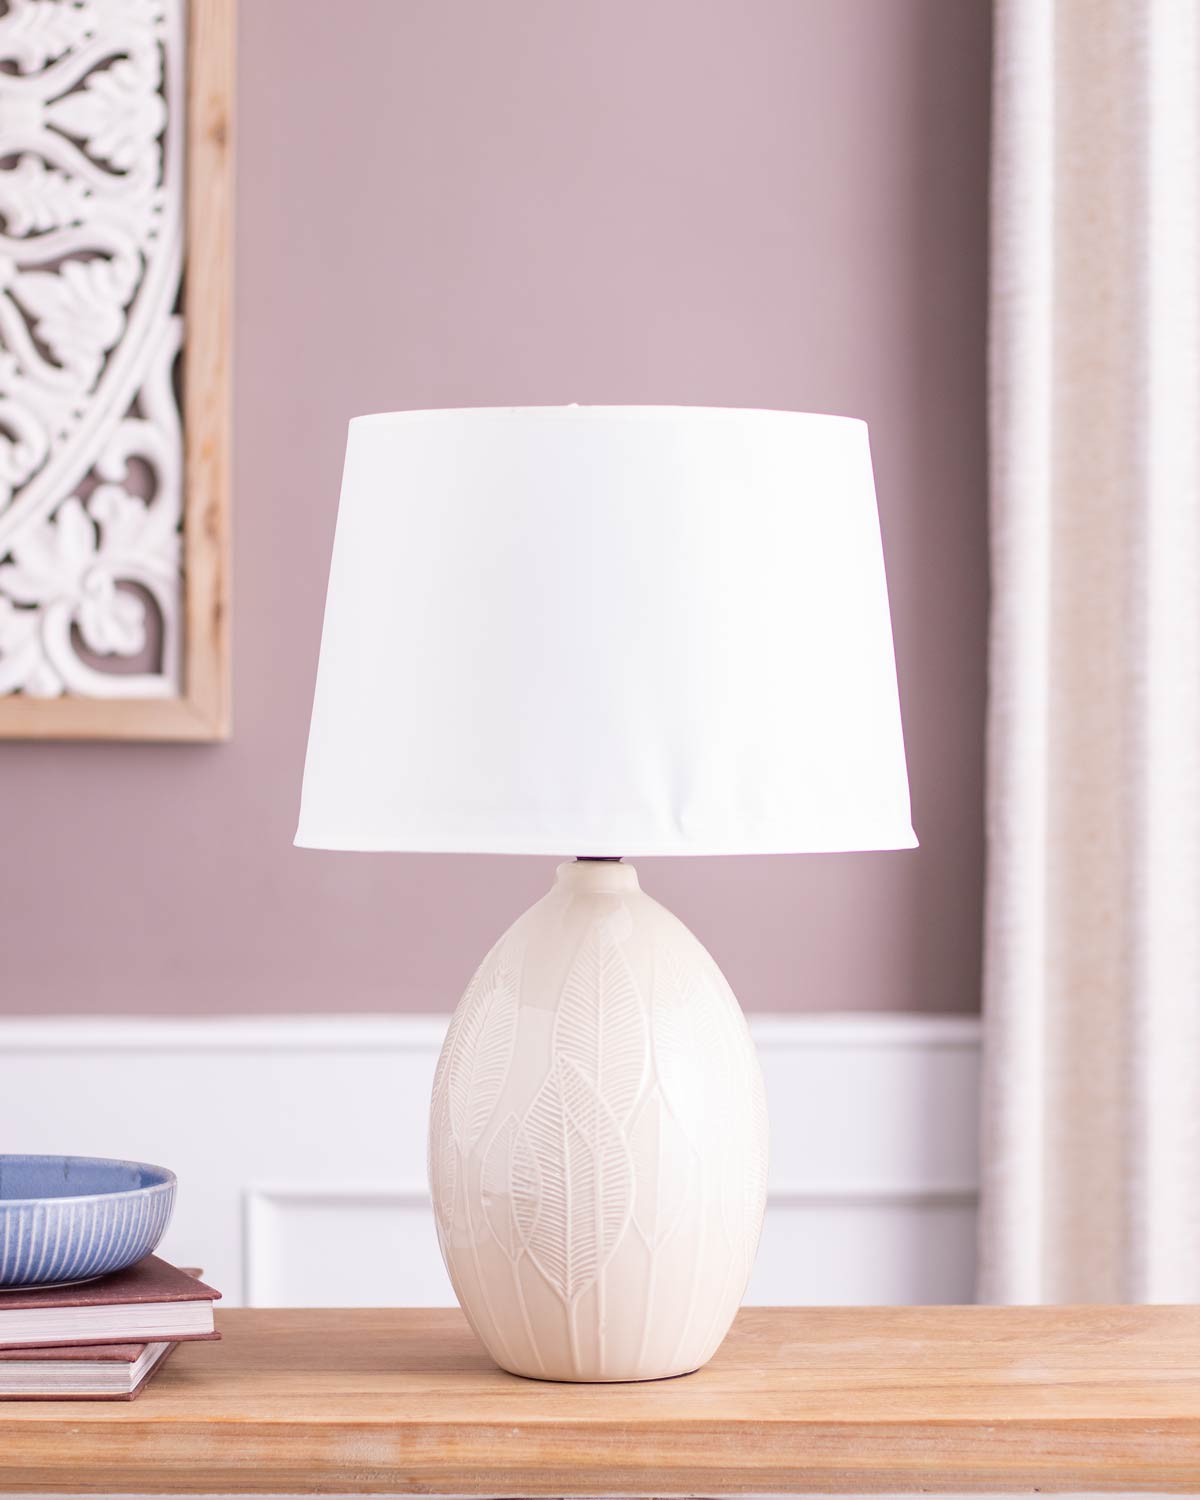 Ambiance Illuminated Ceramic Table Lamp - White